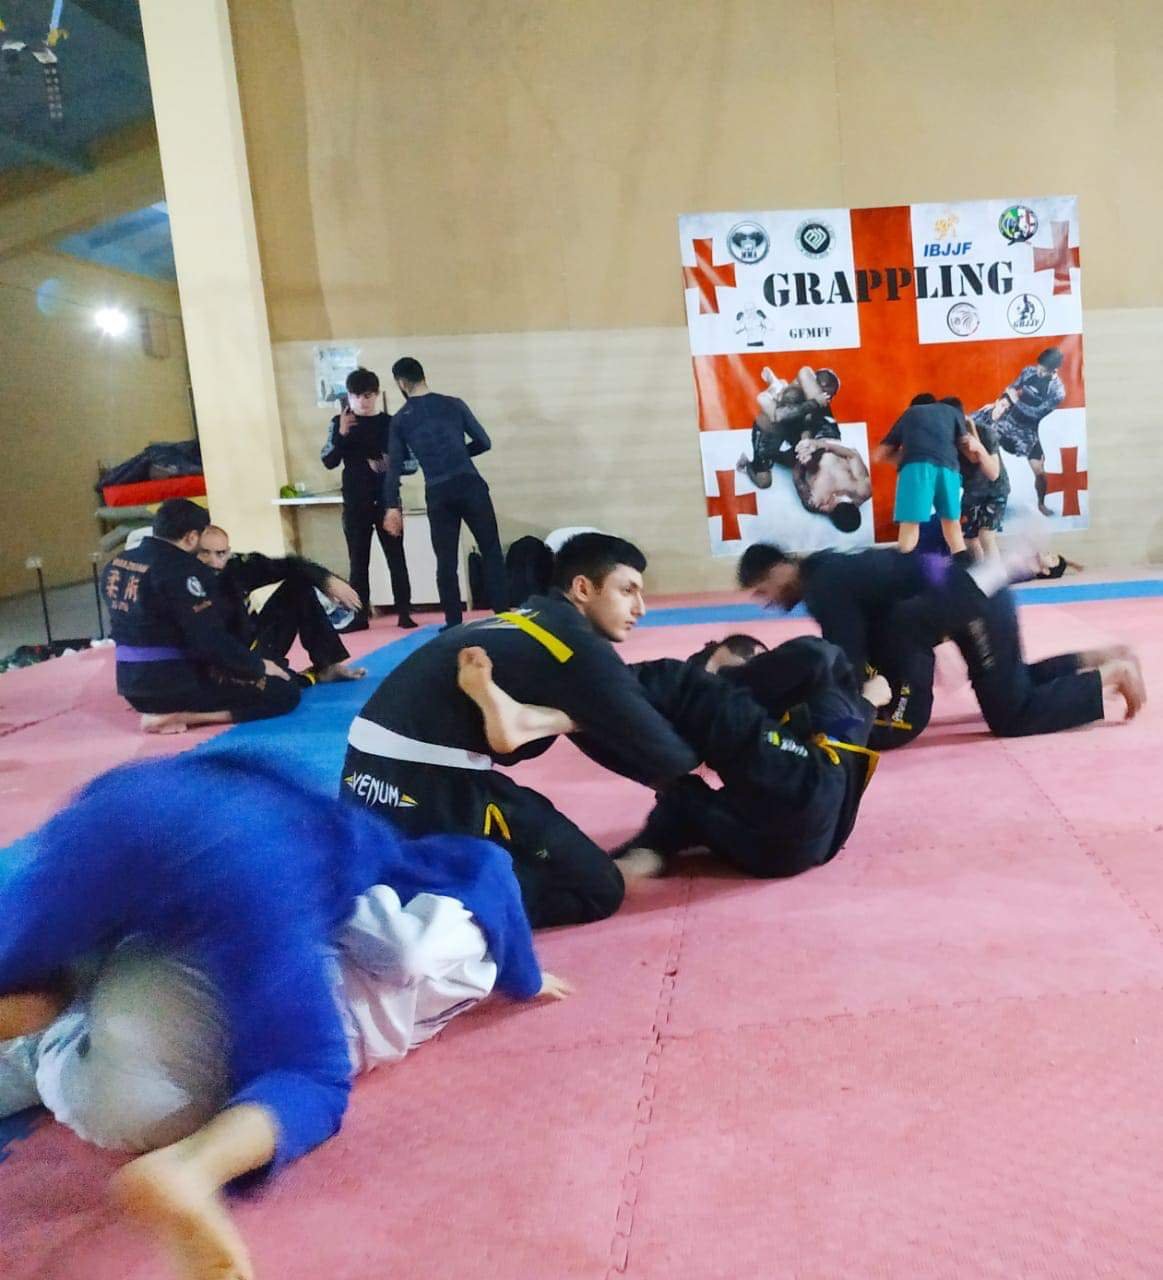 Rustavidə Braziliya Ciu-Citsu növü üzrə beynəlxalq turnir keçirilib - Fotolar